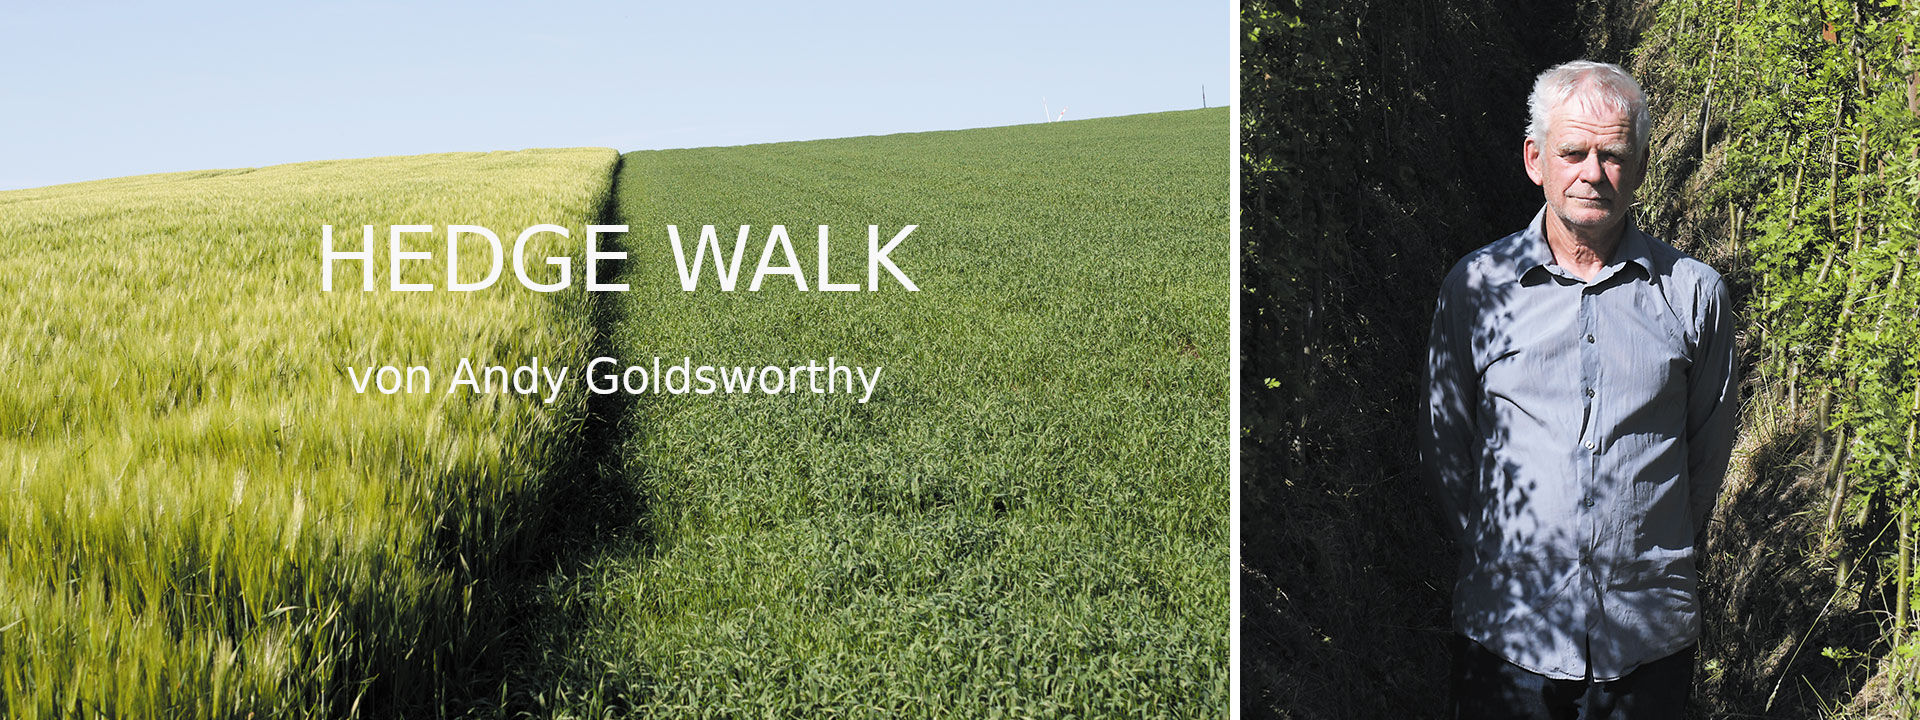 HEDGE WALK - von Andy Goldsworthy